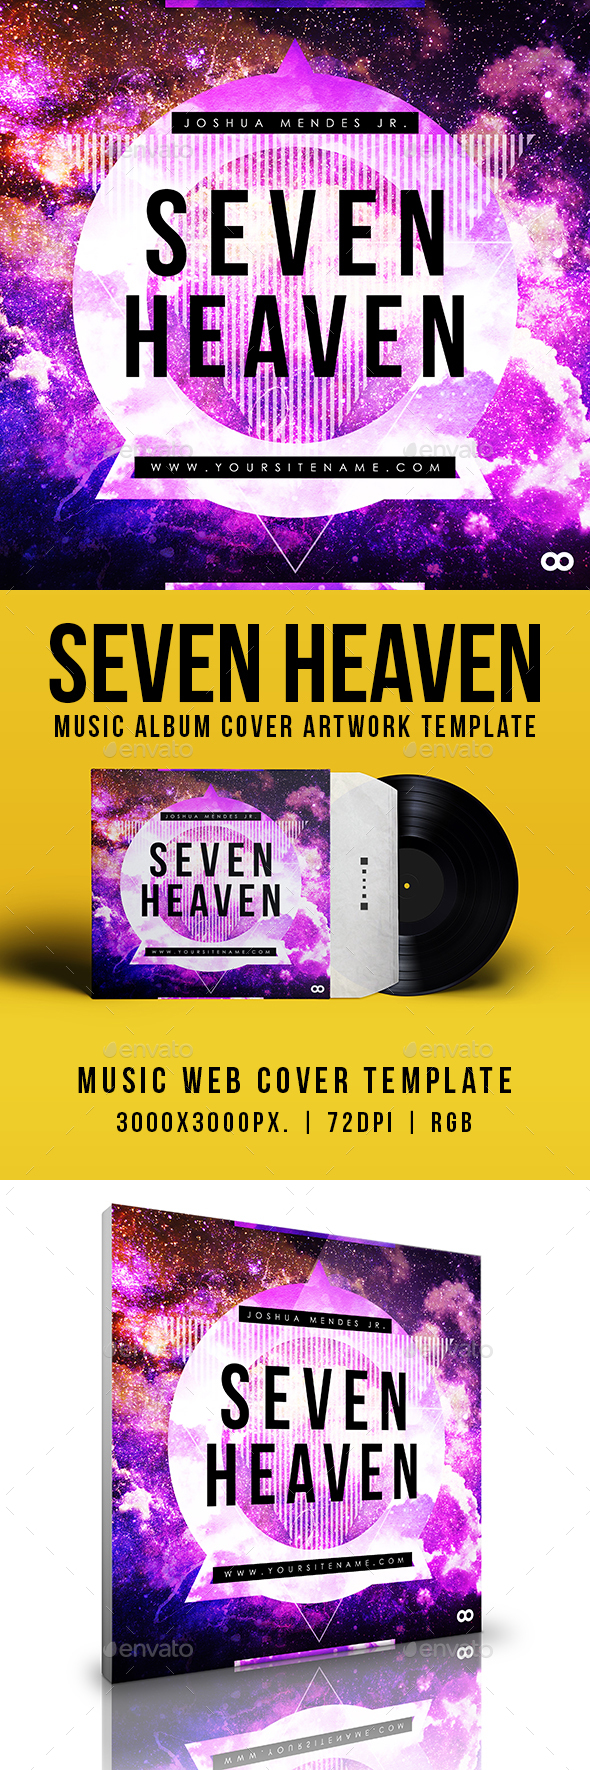 Seven Heaven - Music Album Cover Artwork Template